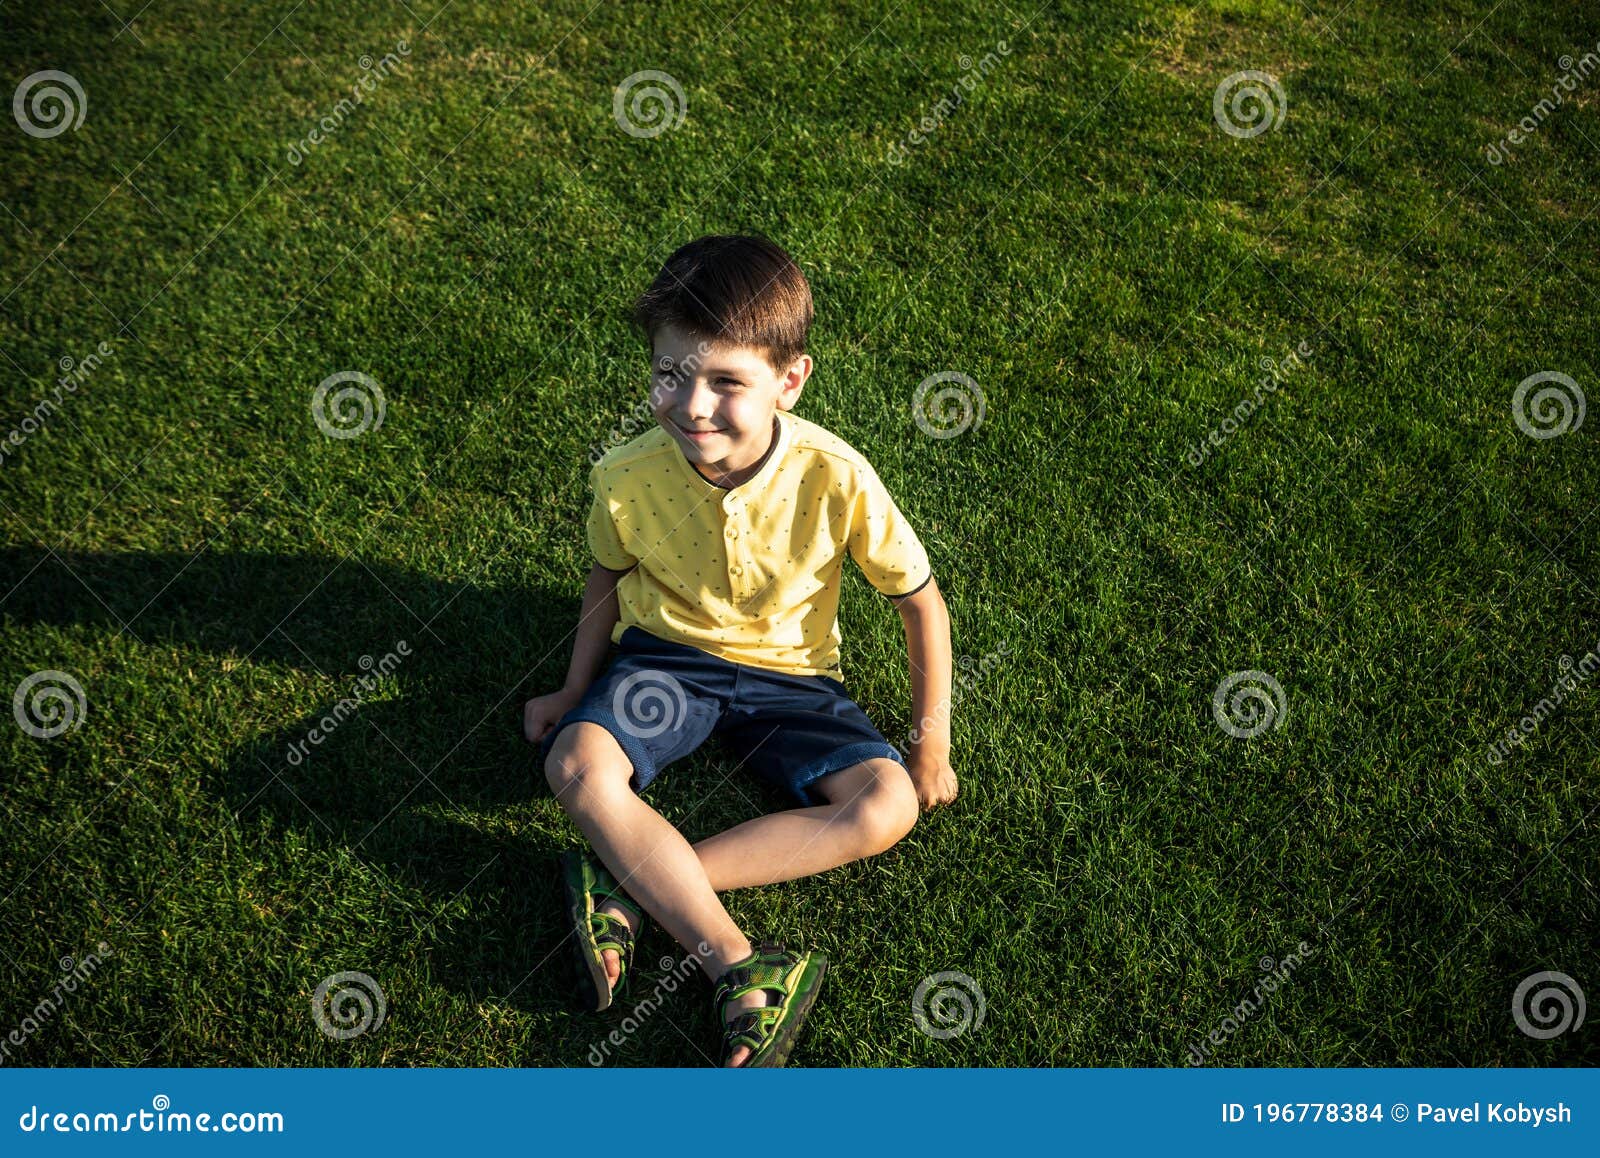 Banco de imagens : grama, ao ar livre, carro, Garoto, criança